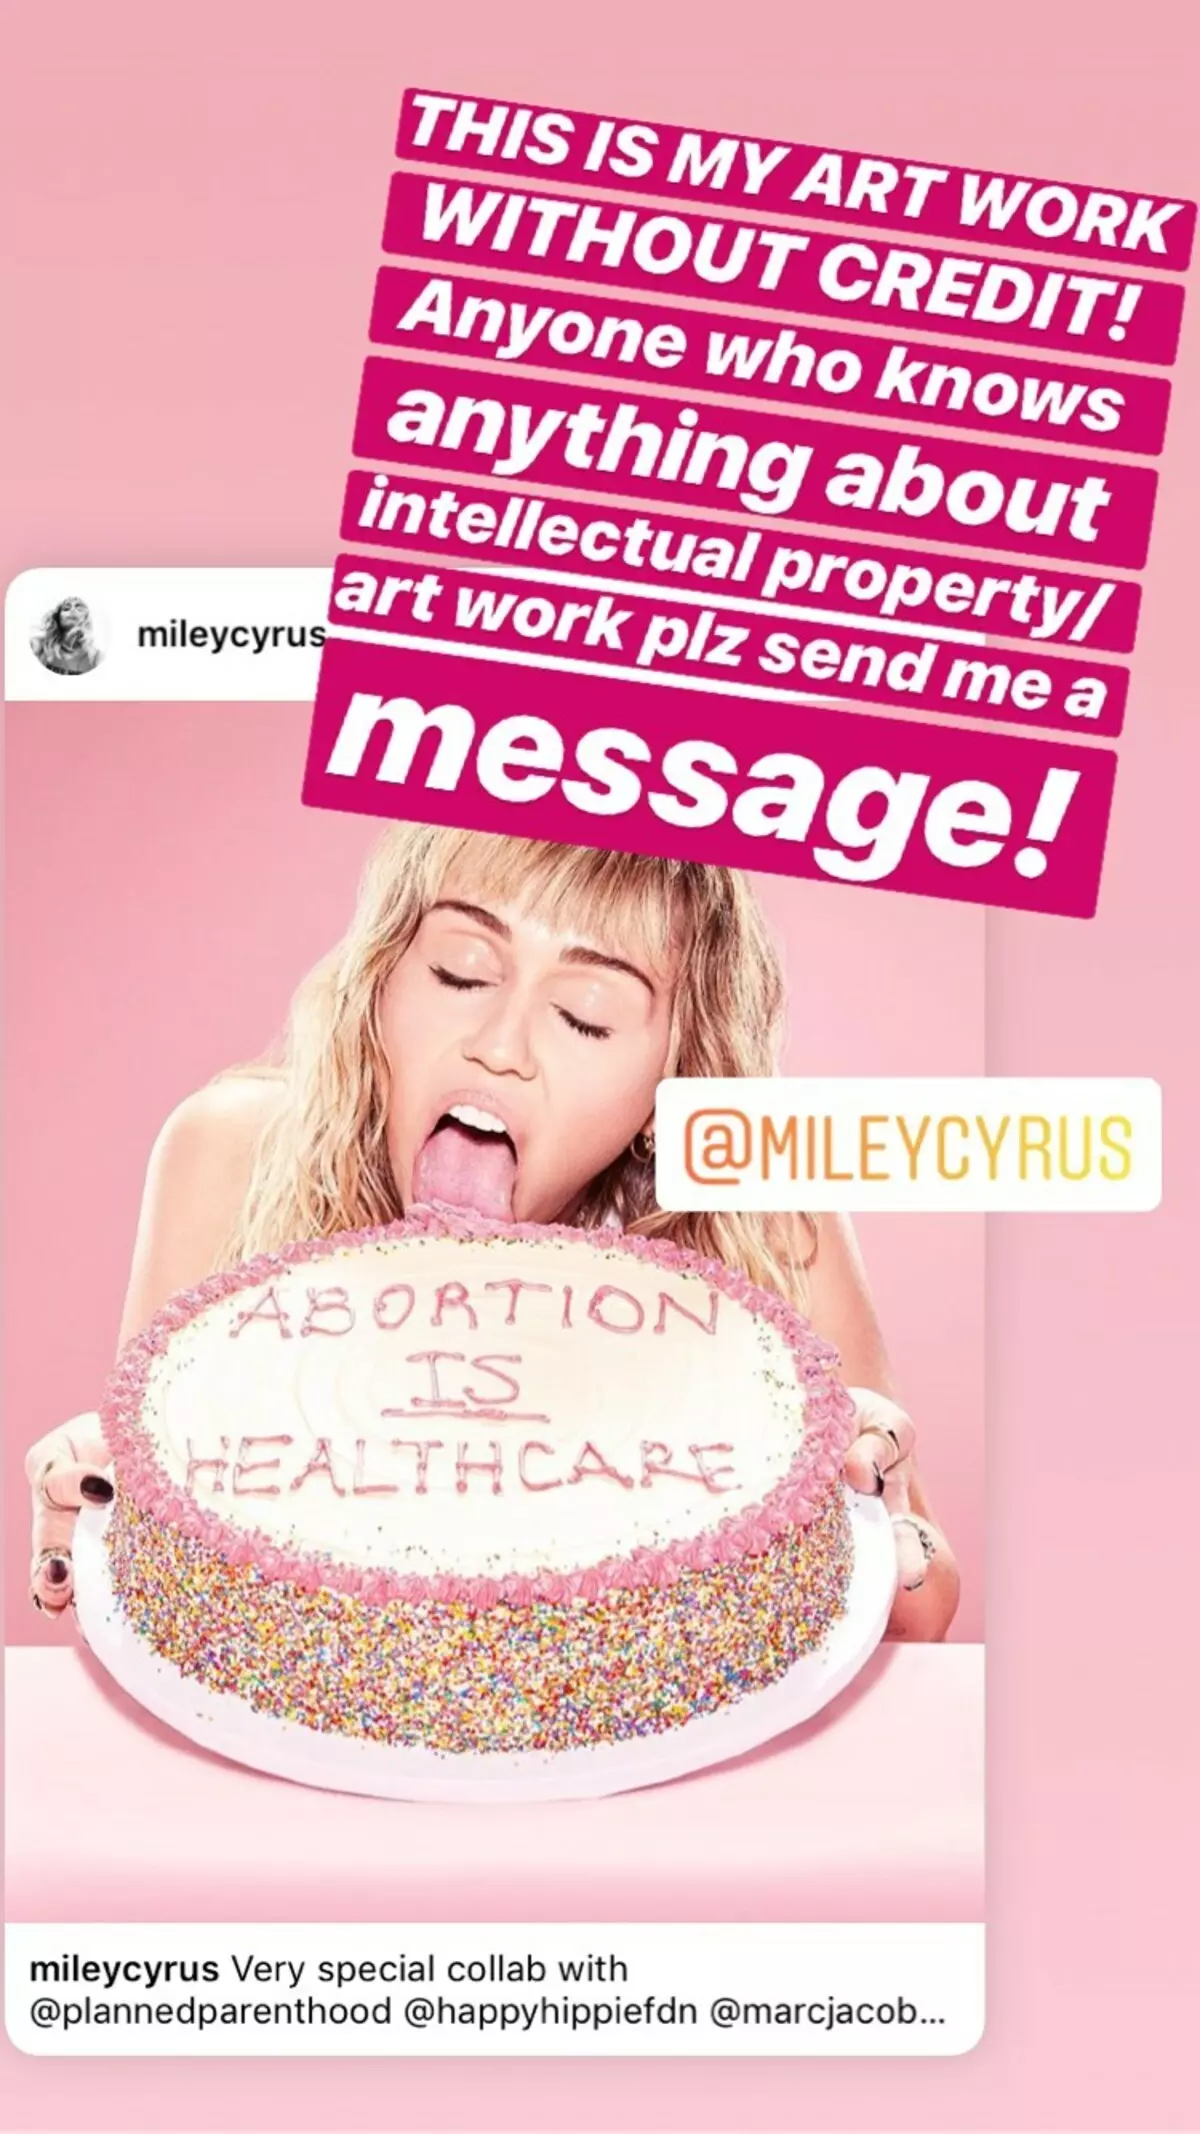 Miley Cyrus apologized for bildet med en kake til støtte for abort 61711_2